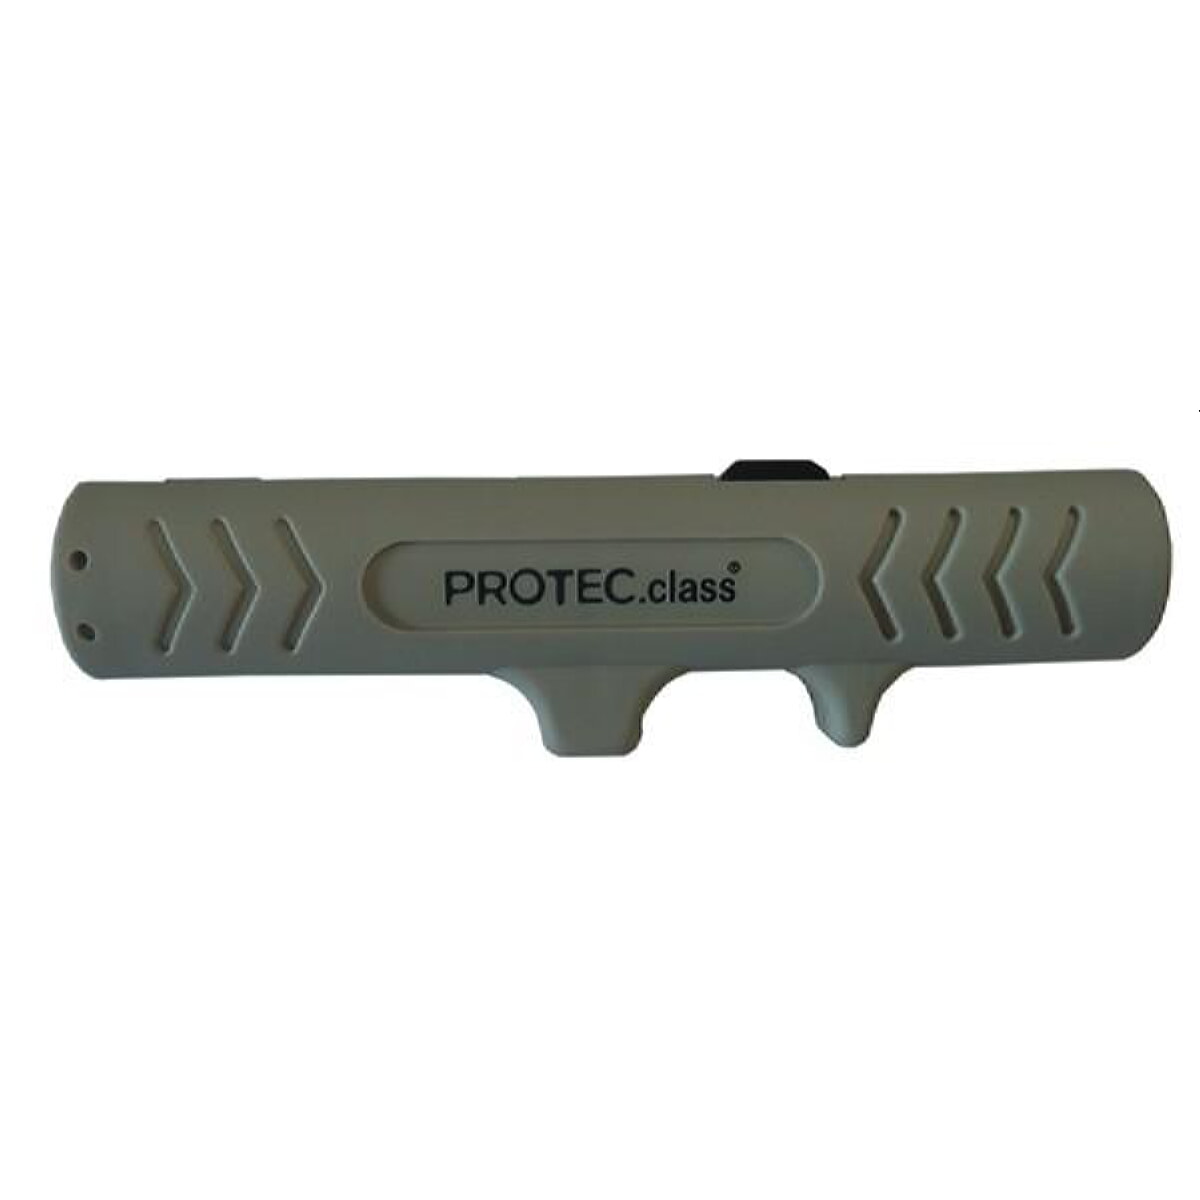 PROTEC.class Entmantler PEMS fuer Solarkabel 2,5-6qm